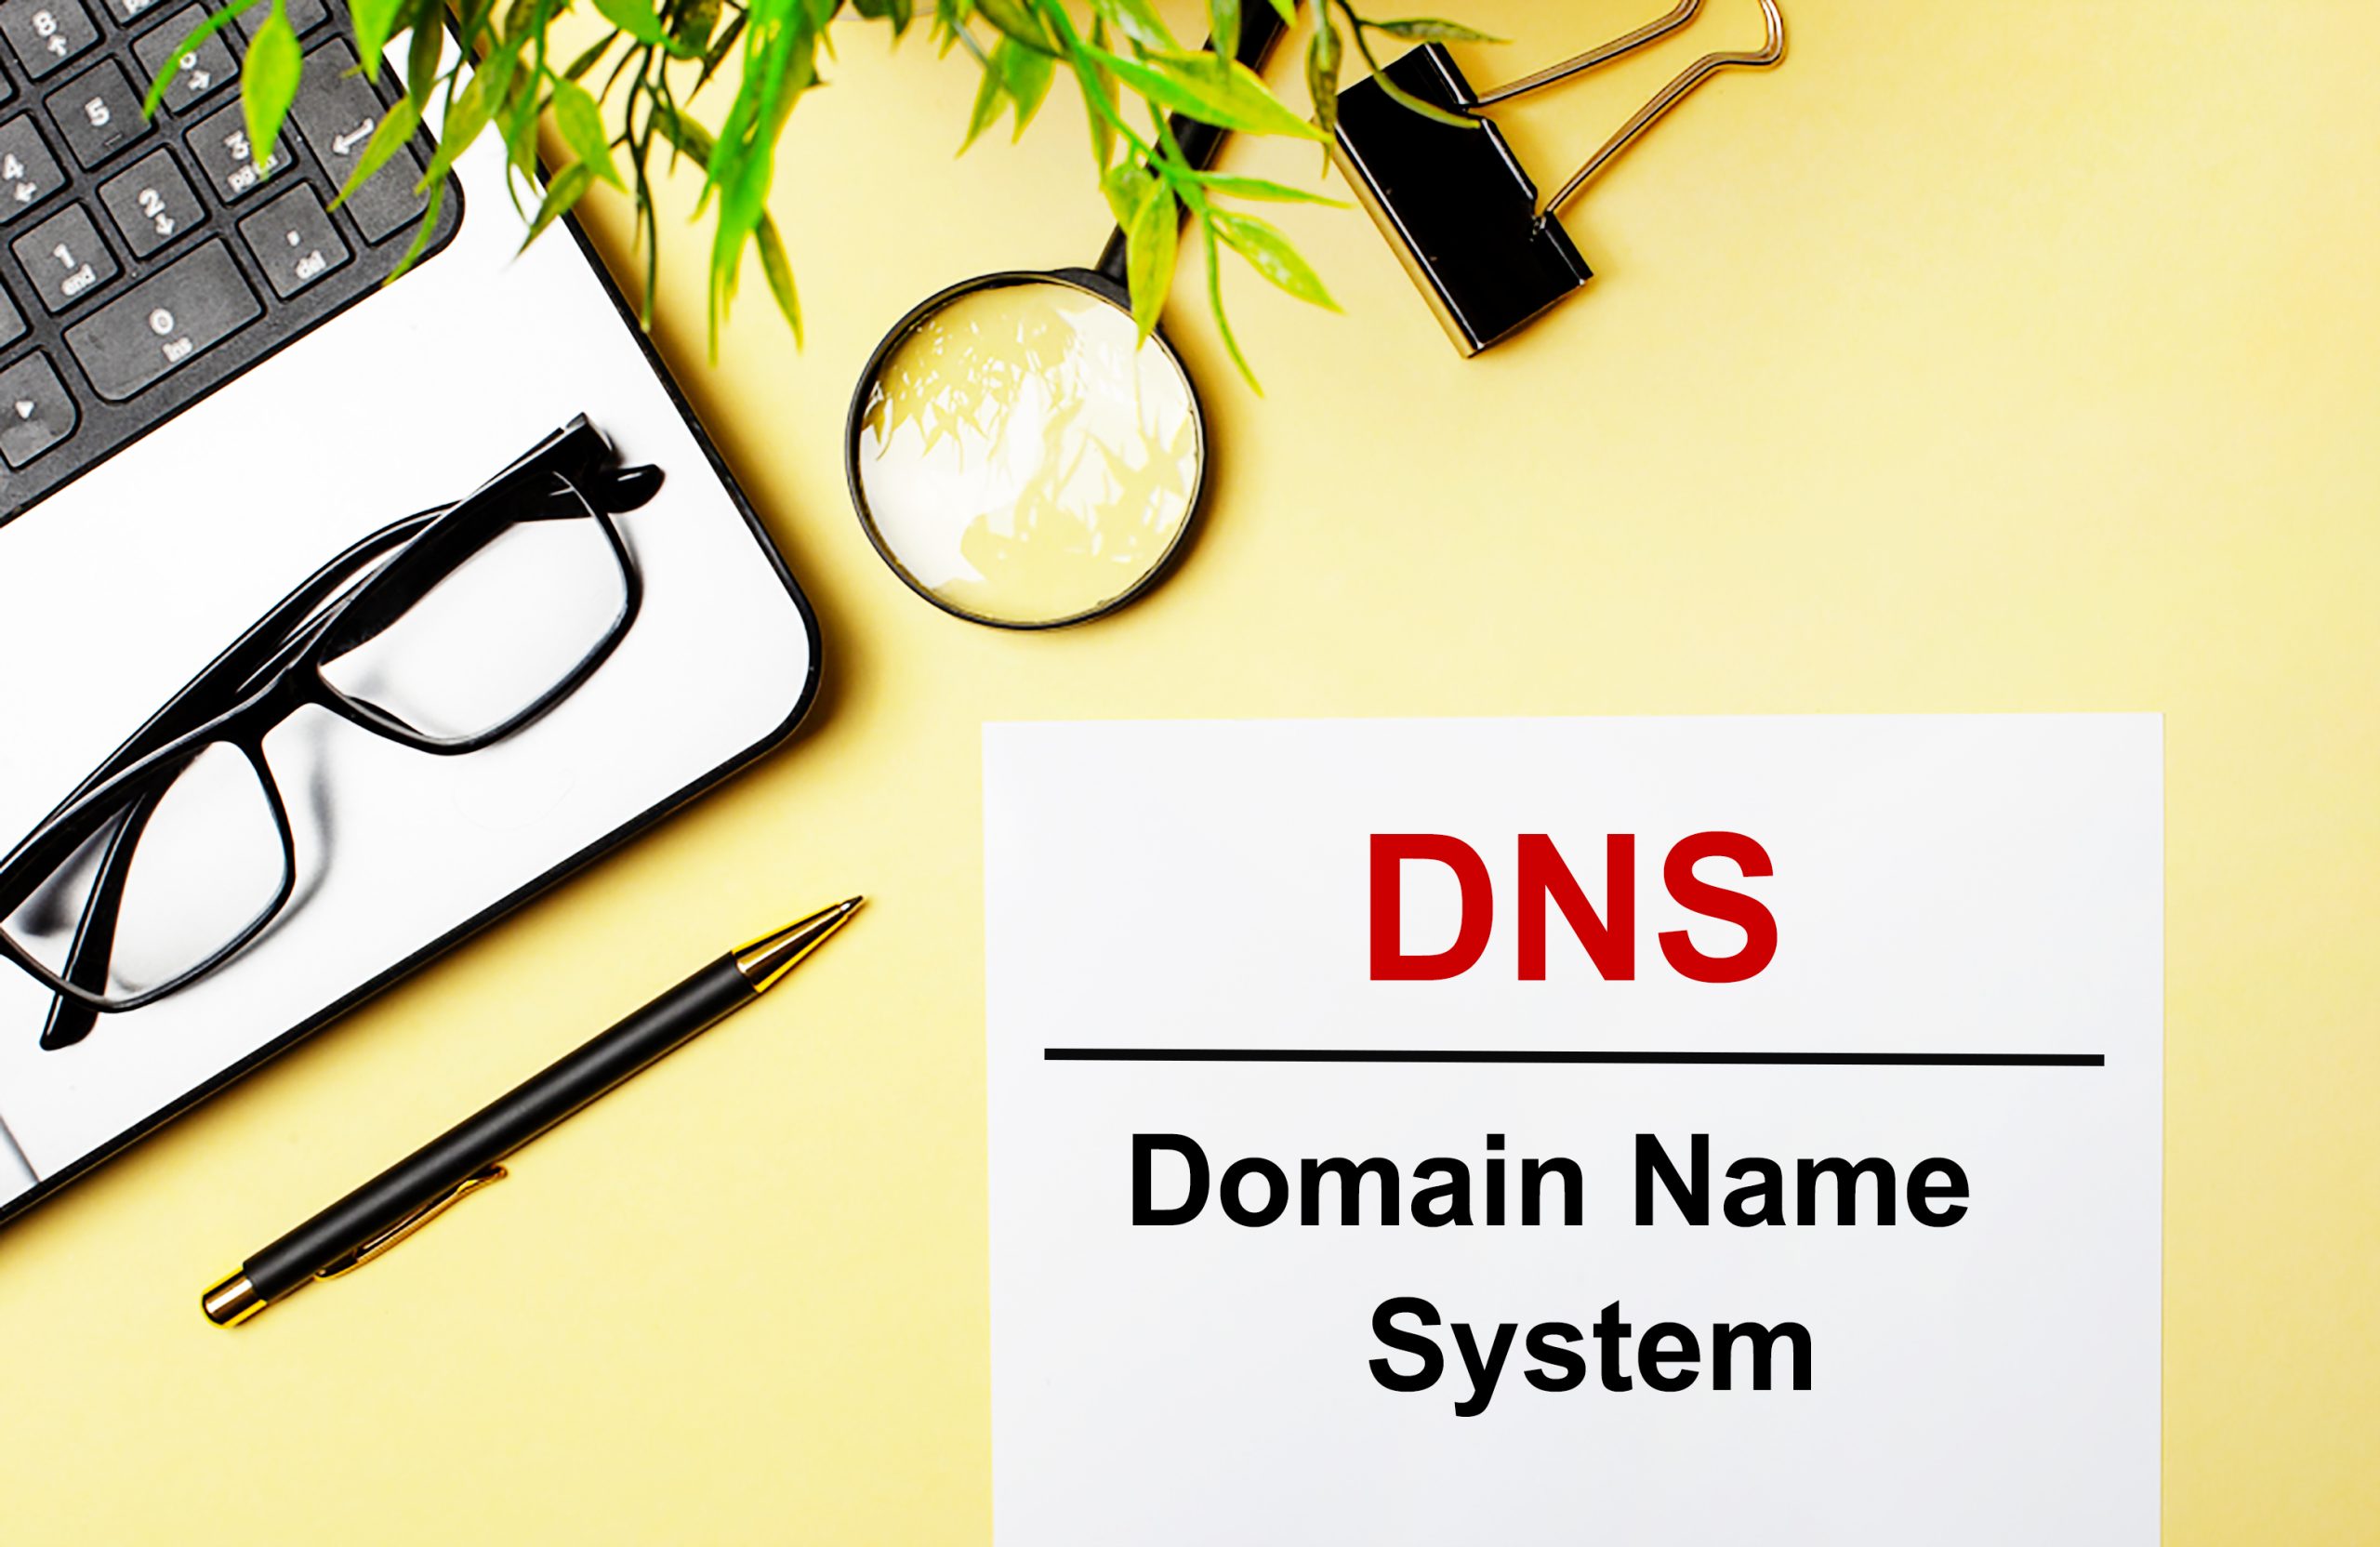 O que é DNS e como ele afeta o seu registro de domínio